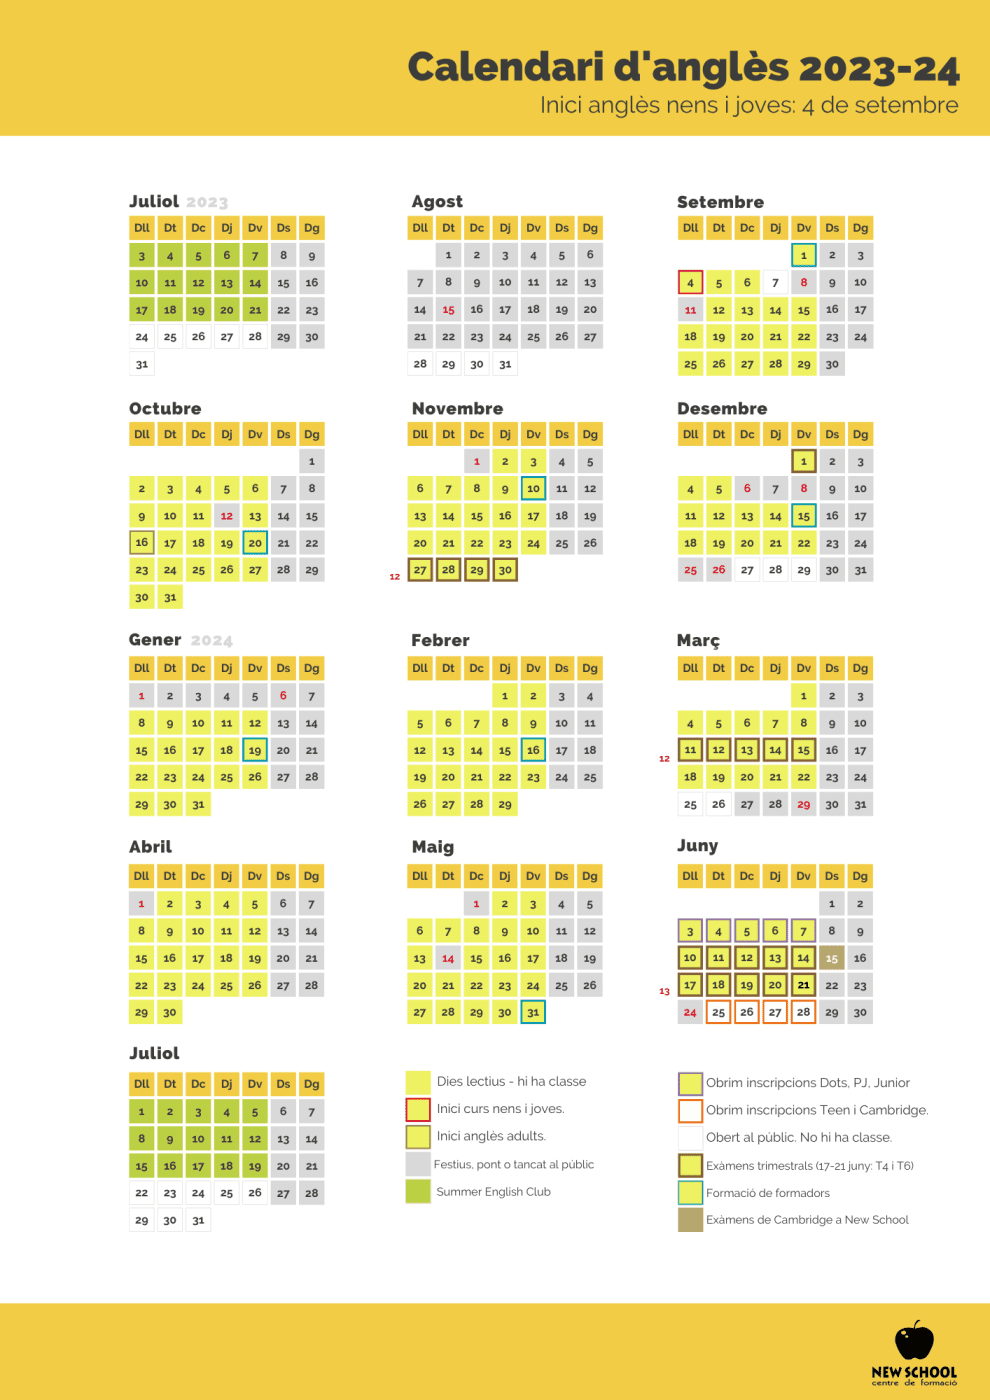 Calendari del curs d'anglès 2023-24 a New School